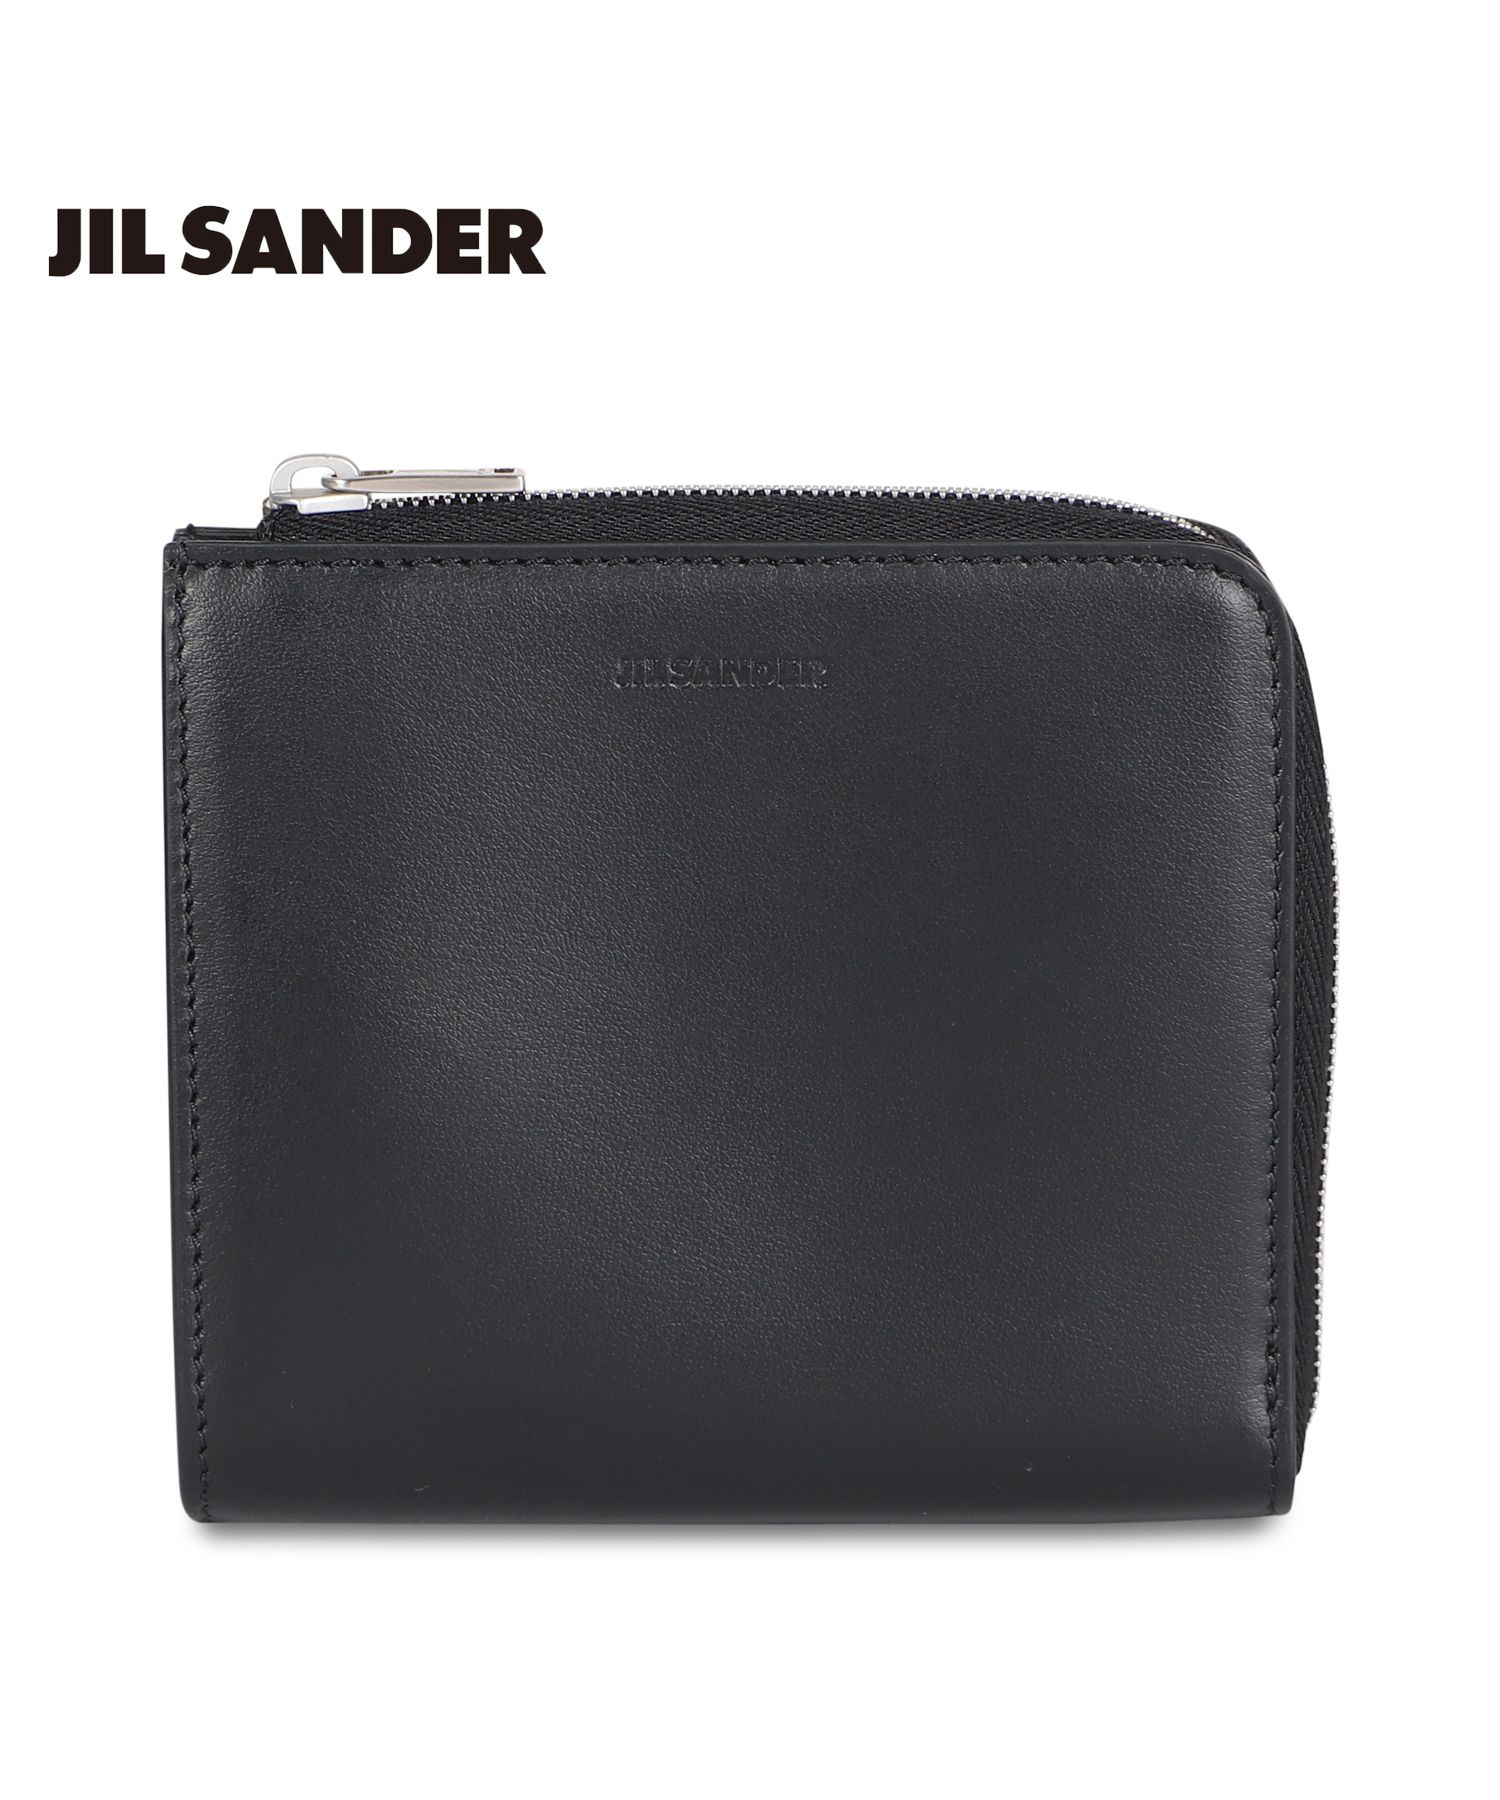 ジルサンダー JIL SANDER 財布 カードケース 名刺入れ 定期入れ